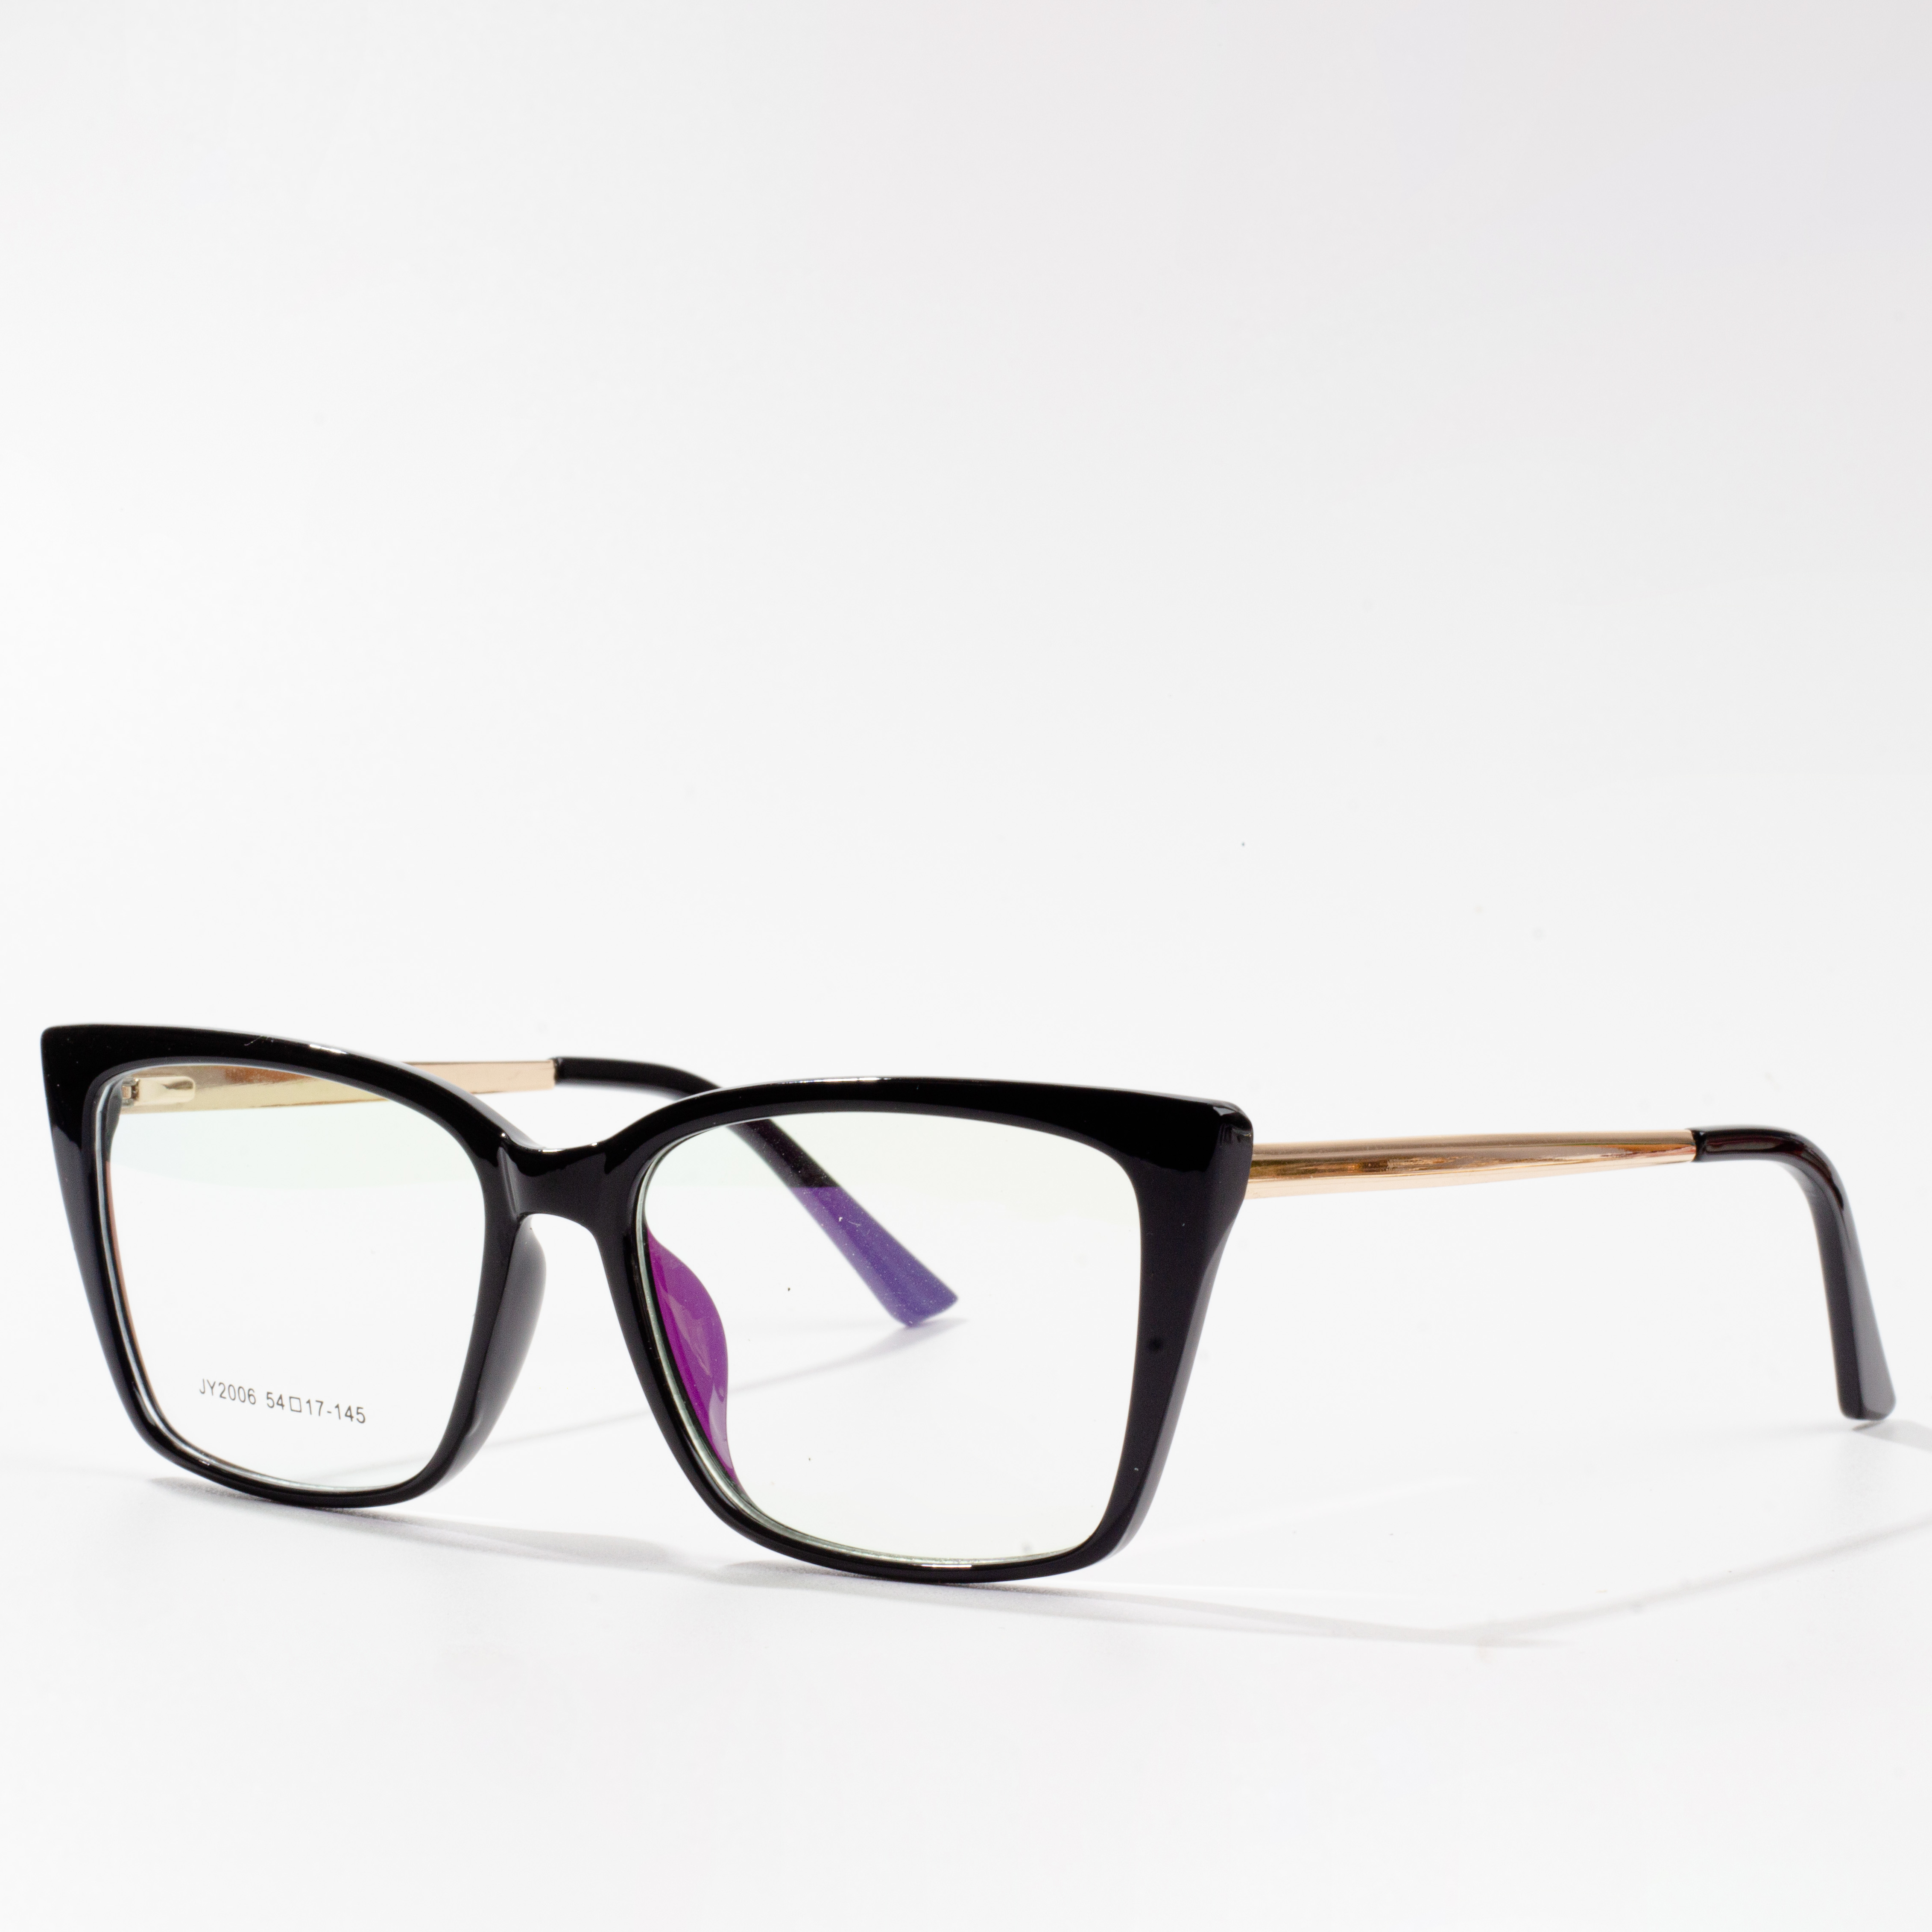 frame kacamata populer